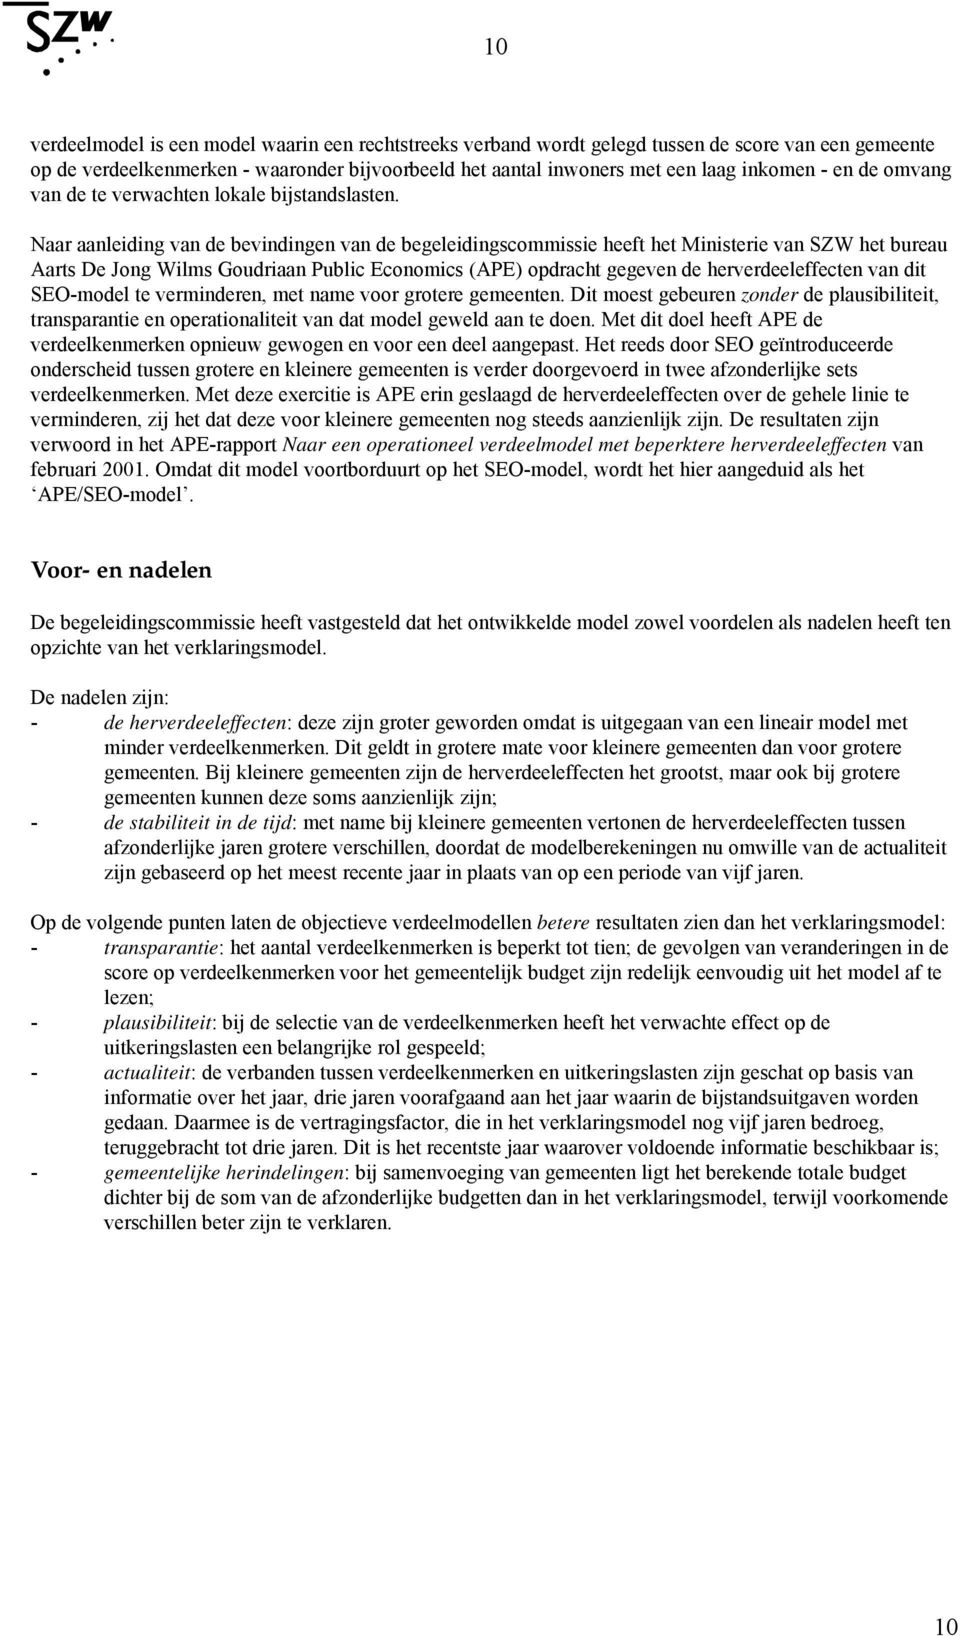 Naar aanleiding van de bevindingen van de begeleidingscommissie heeft het Ministerie van SZW het bureau Aarts De Jong Wilms Goudriaan Public Economics (APE) opdracht gegeven de herverdeeleffecten van